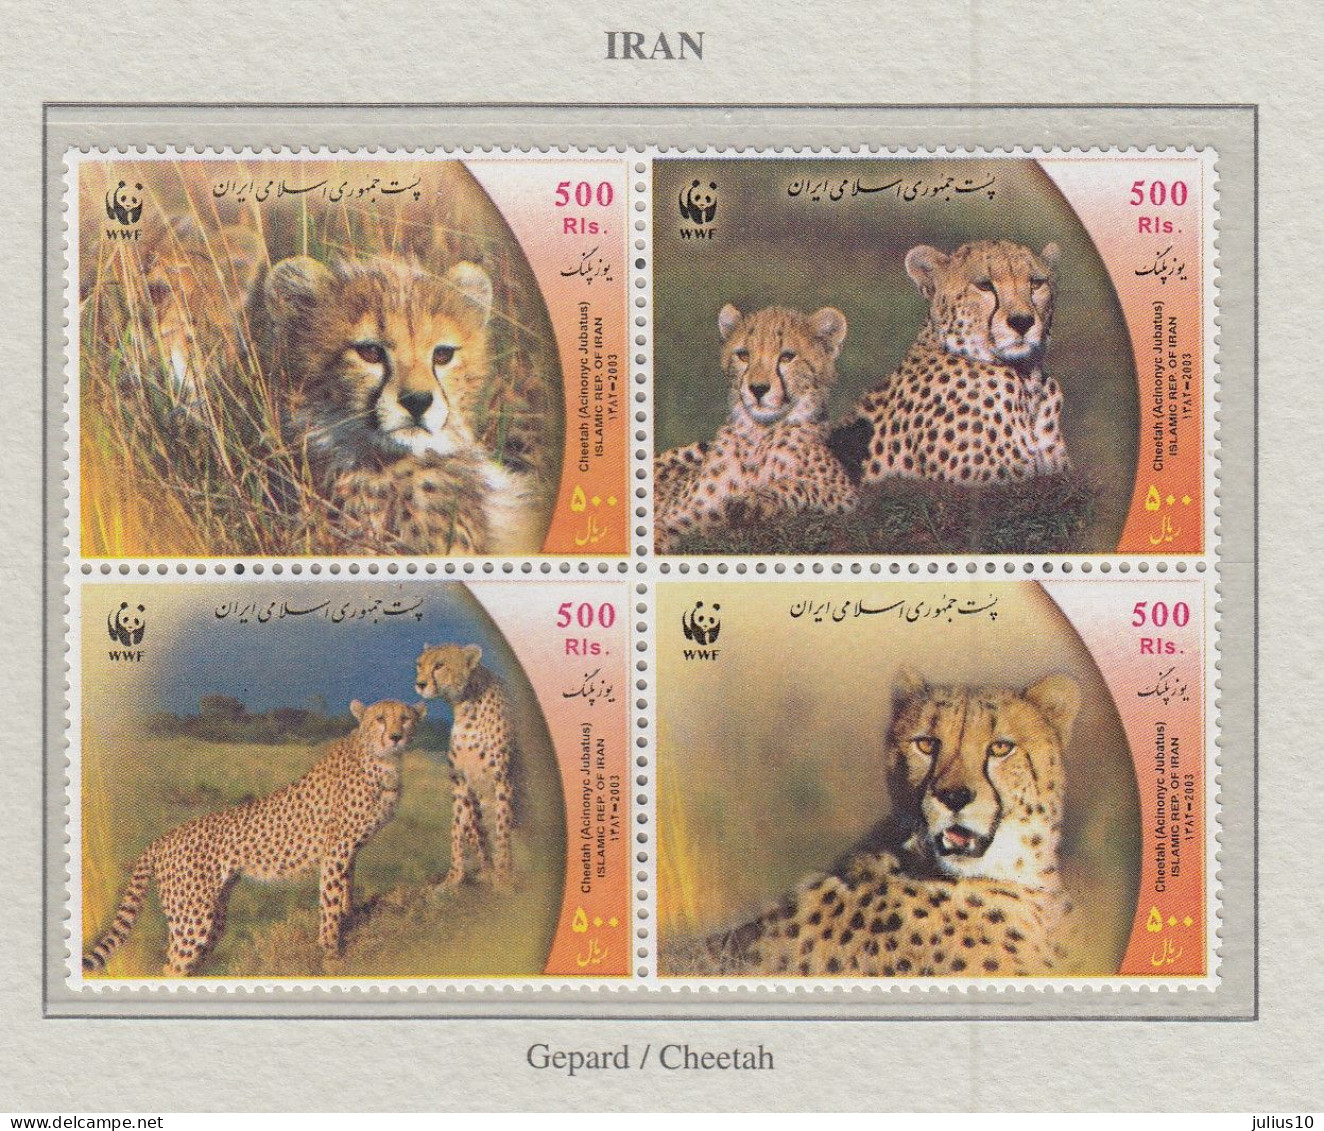 IRAN 2003 WWF Wild Cats Mi 2932-2935 MNH Fauna 676 - Roofkatten